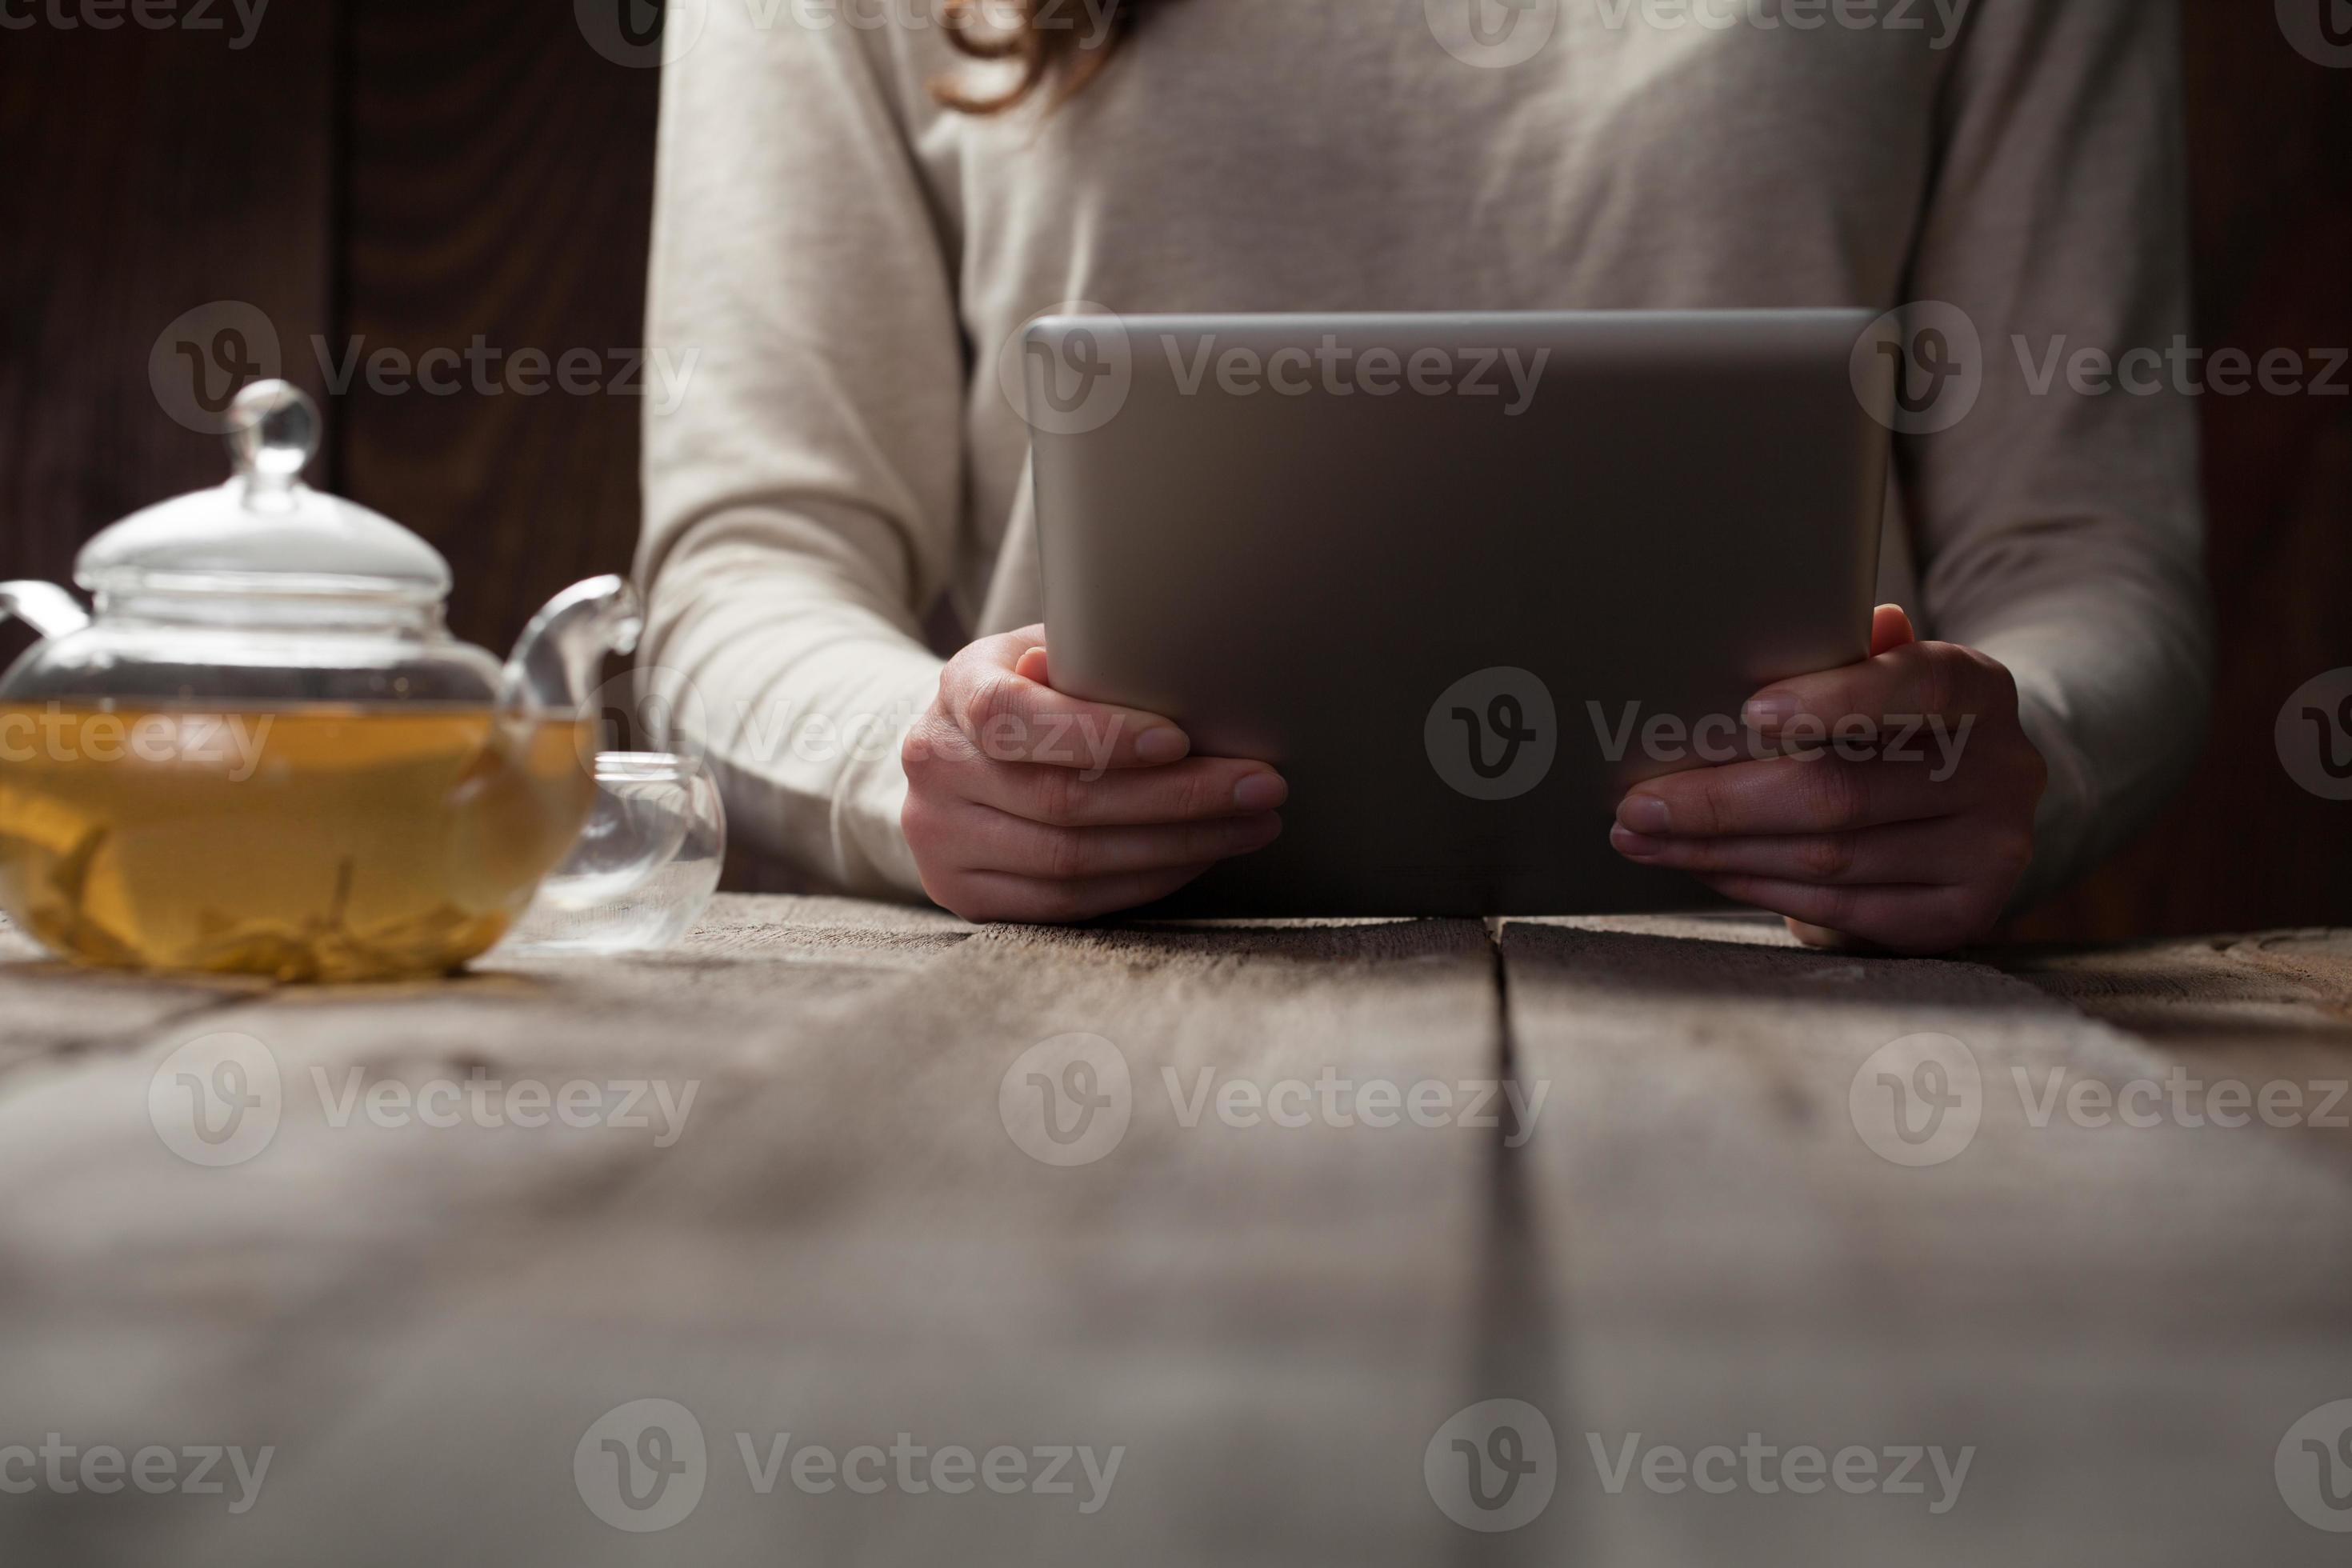 Bildschirm des digitalen Tablet-PCs auf Holztisch foto